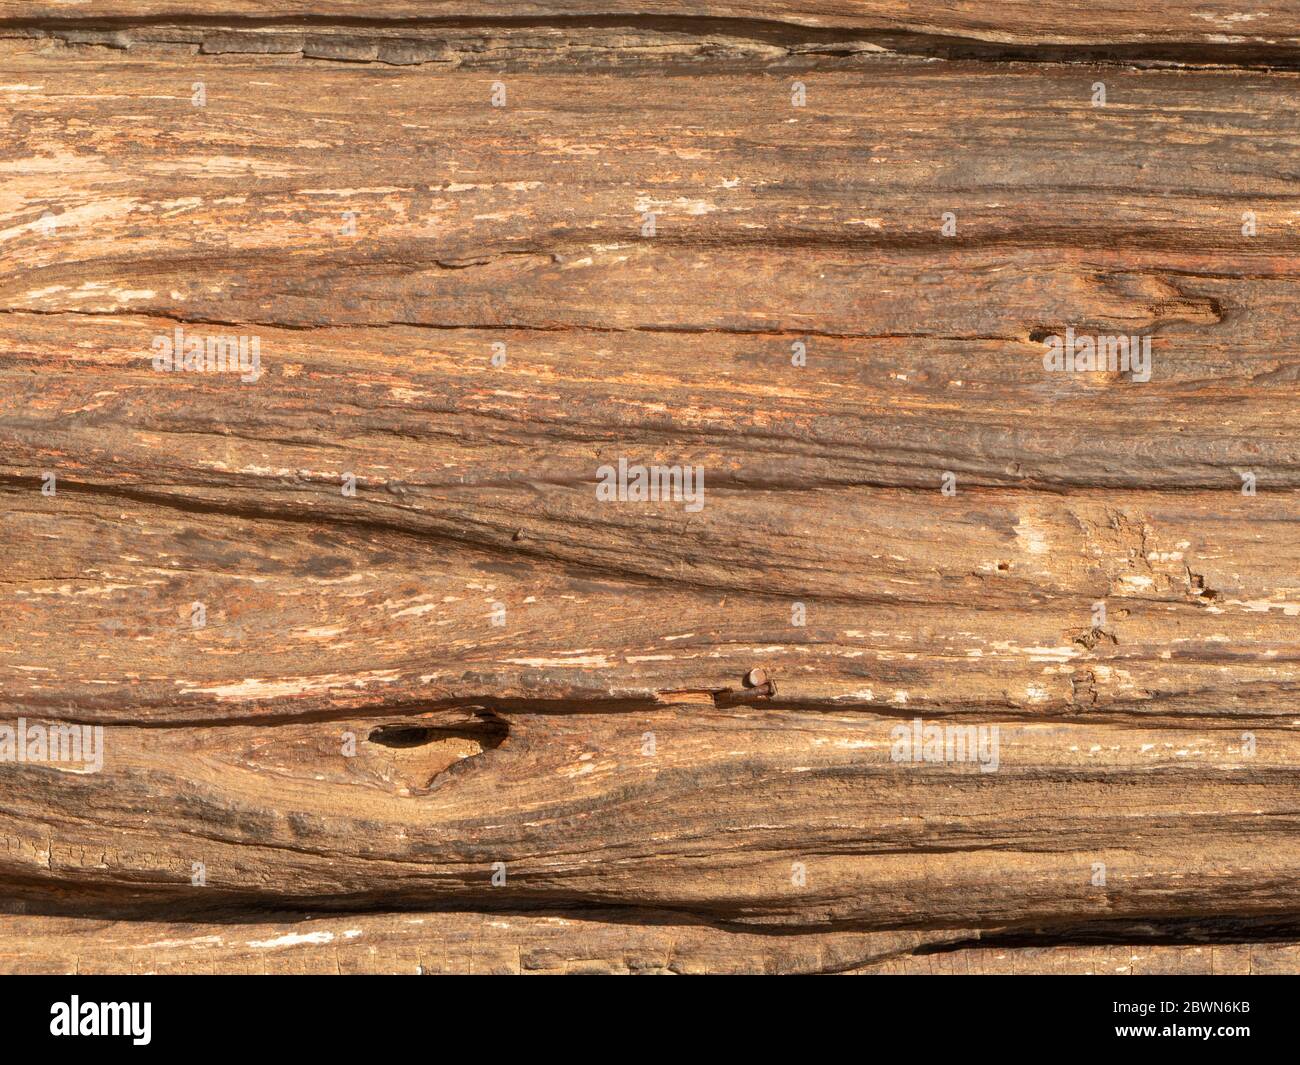 Tweede leerjaar Botsing Archeologisch Old teak wood surface in closeup shot Stock Photo - Alamy